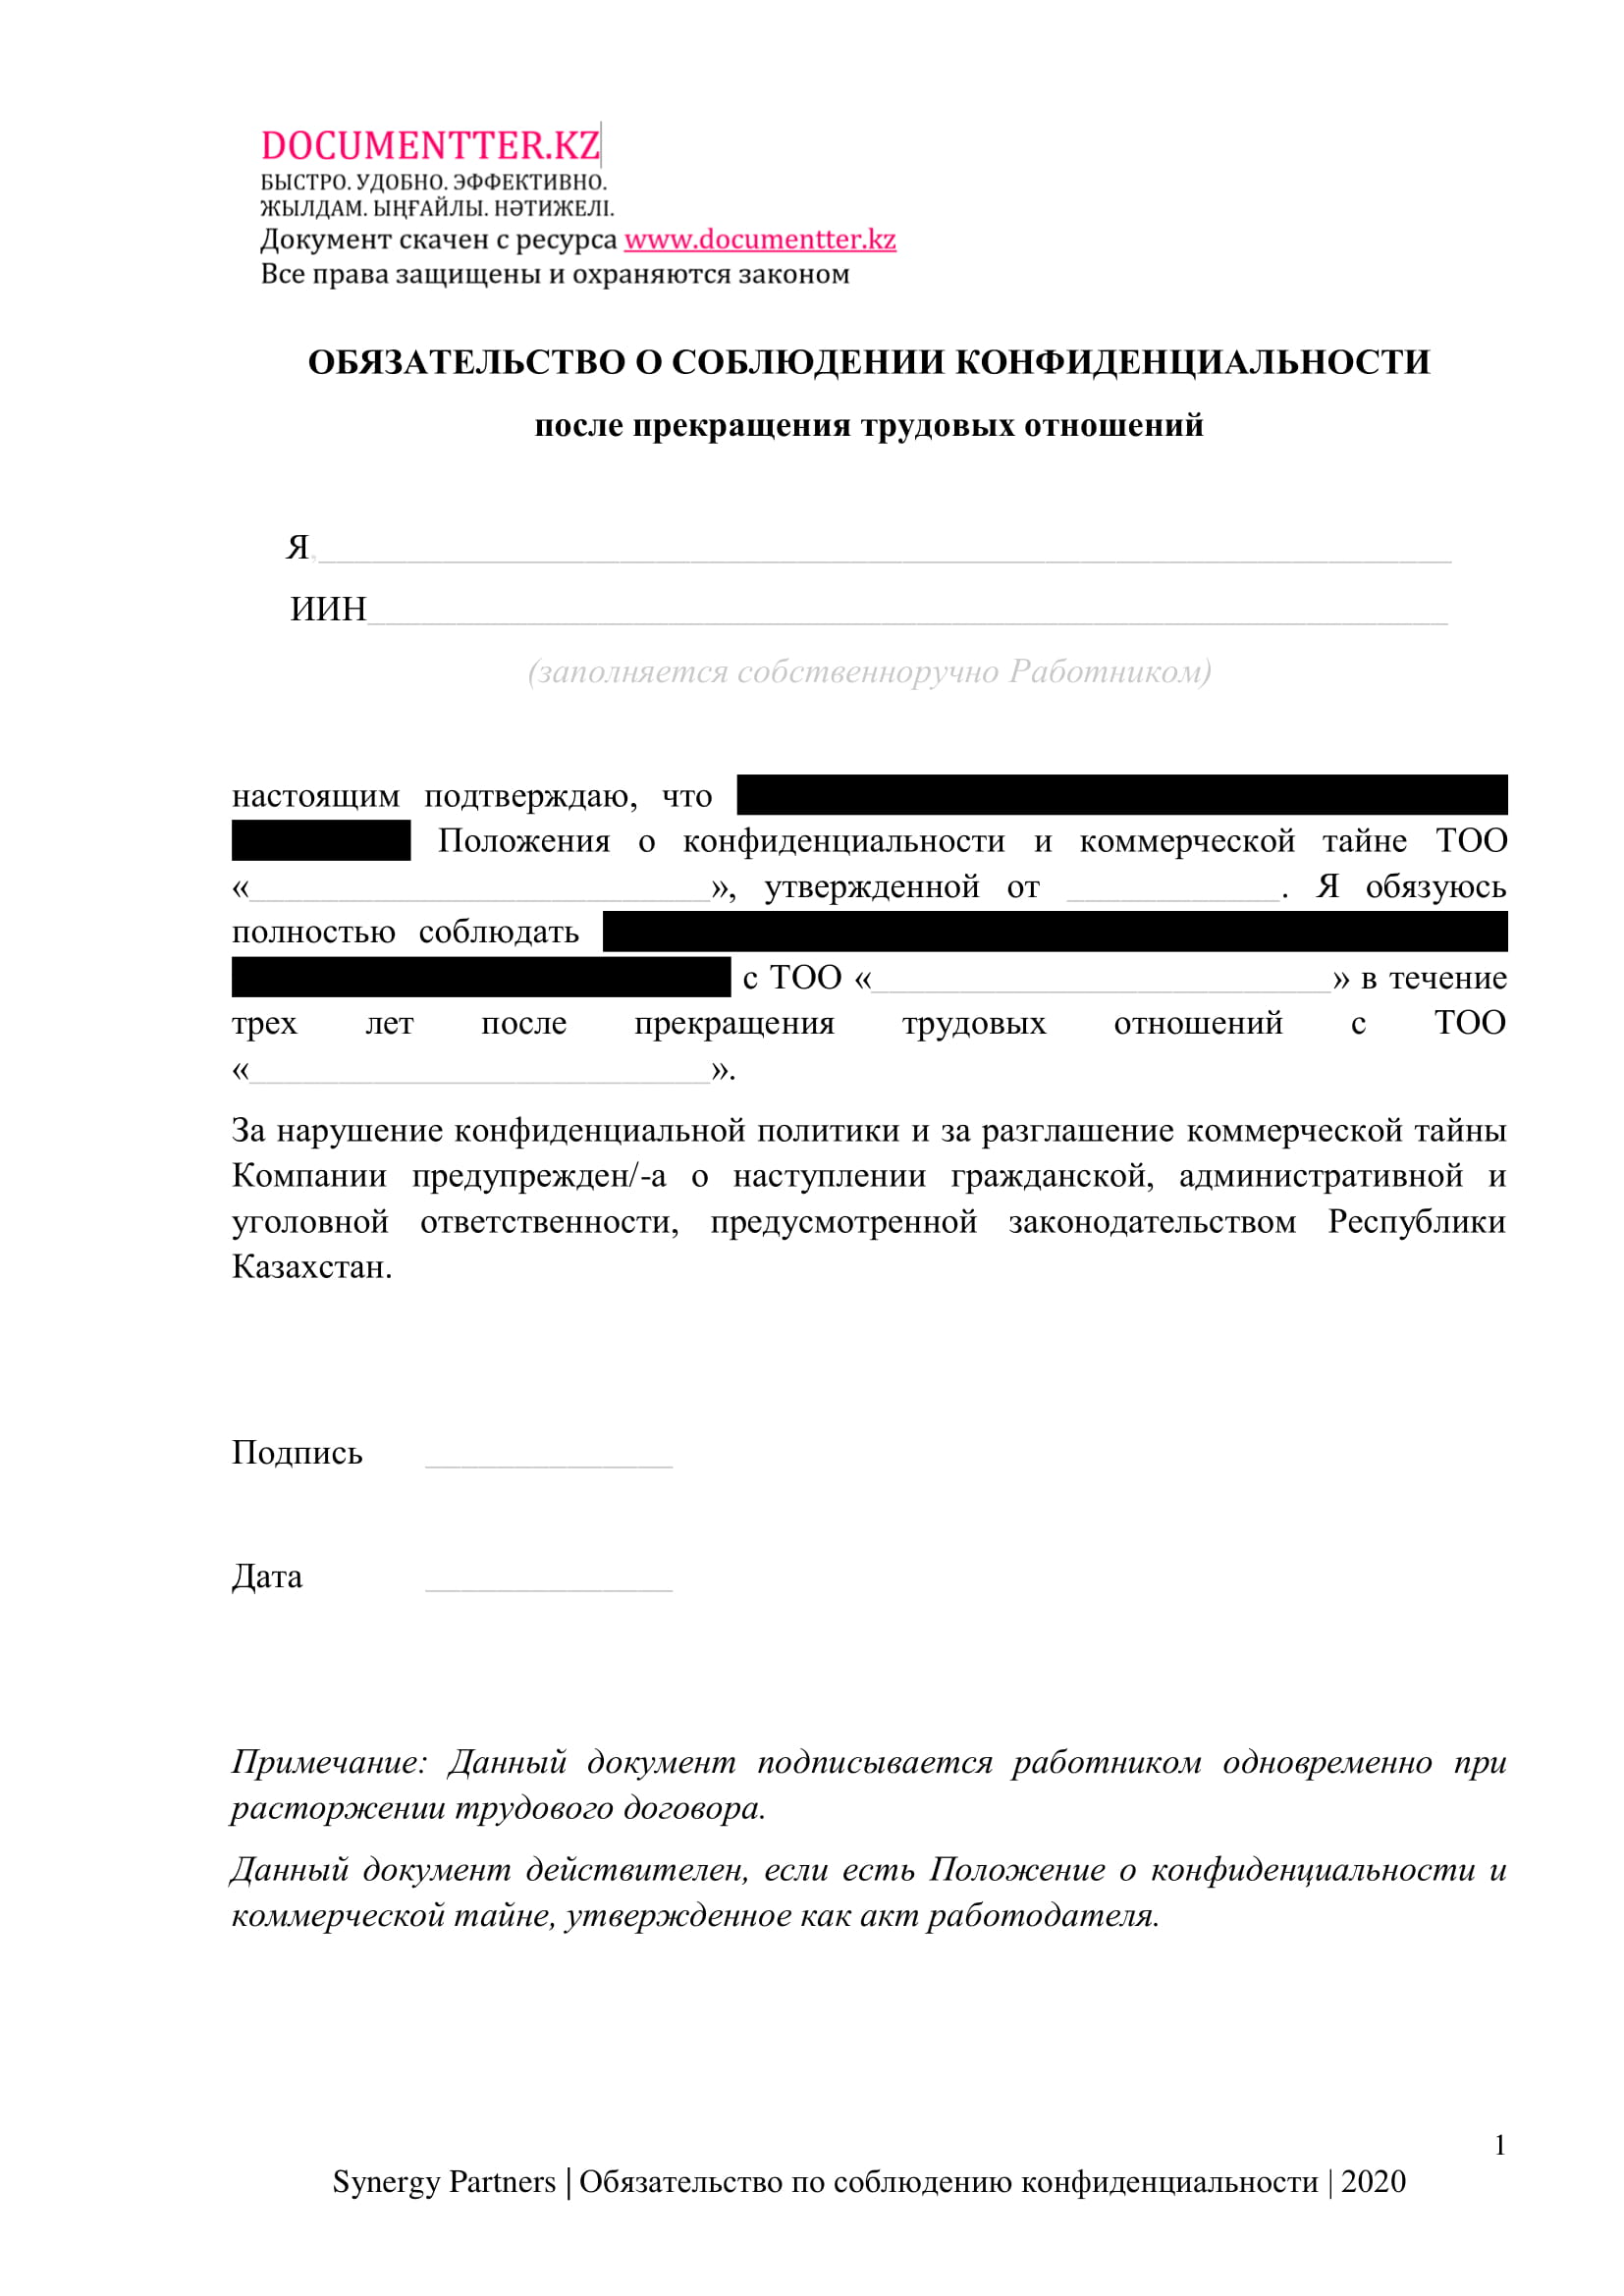 Обязательство по сохранению конфиденциальности после ухода | documentterkz.com в Казахстане